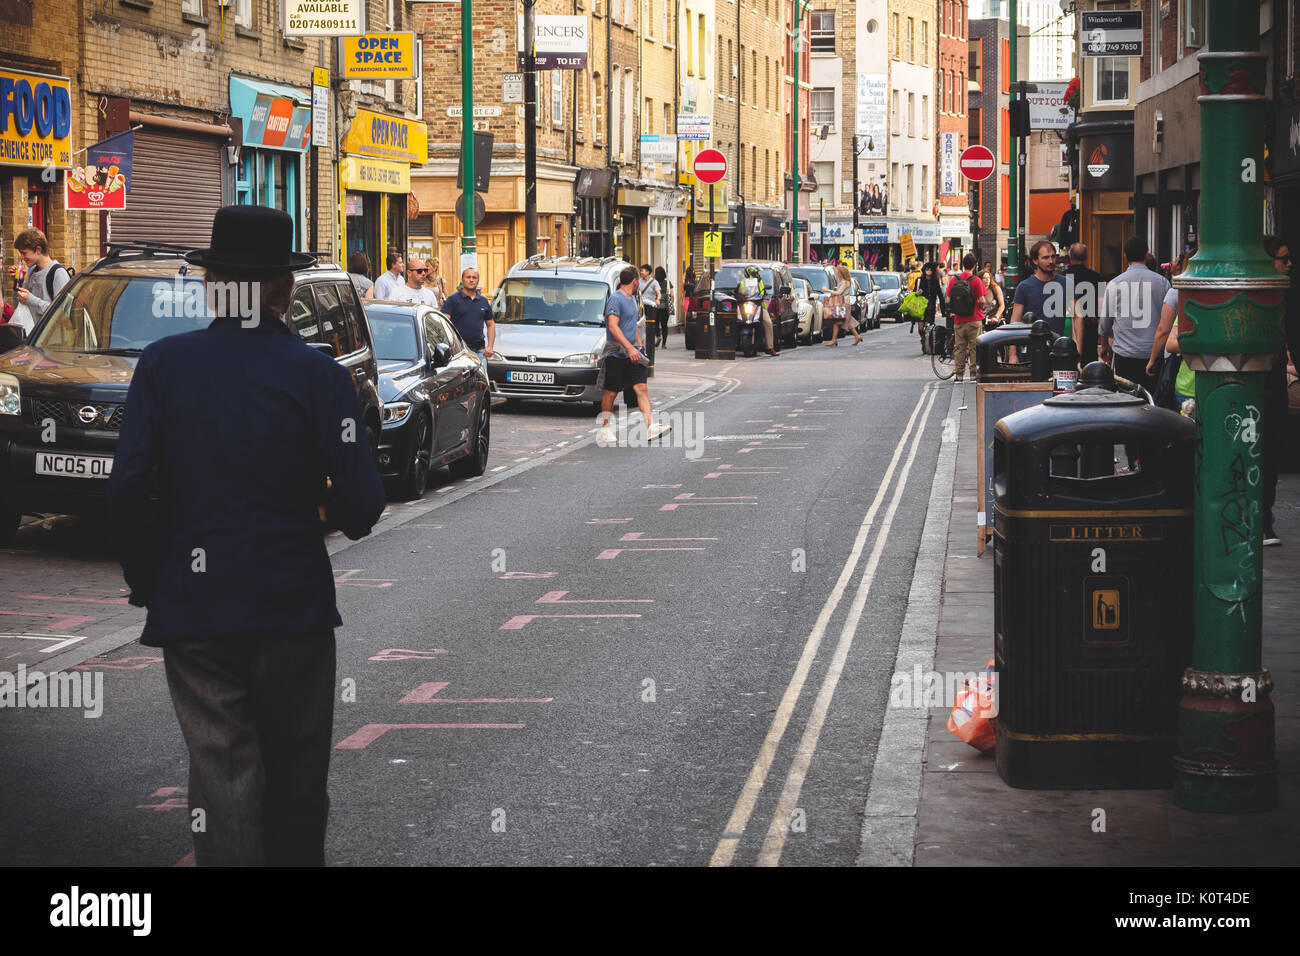 Man walking on Brick Lane in East London (UK). July 2017. Landscape format. Stock Photo